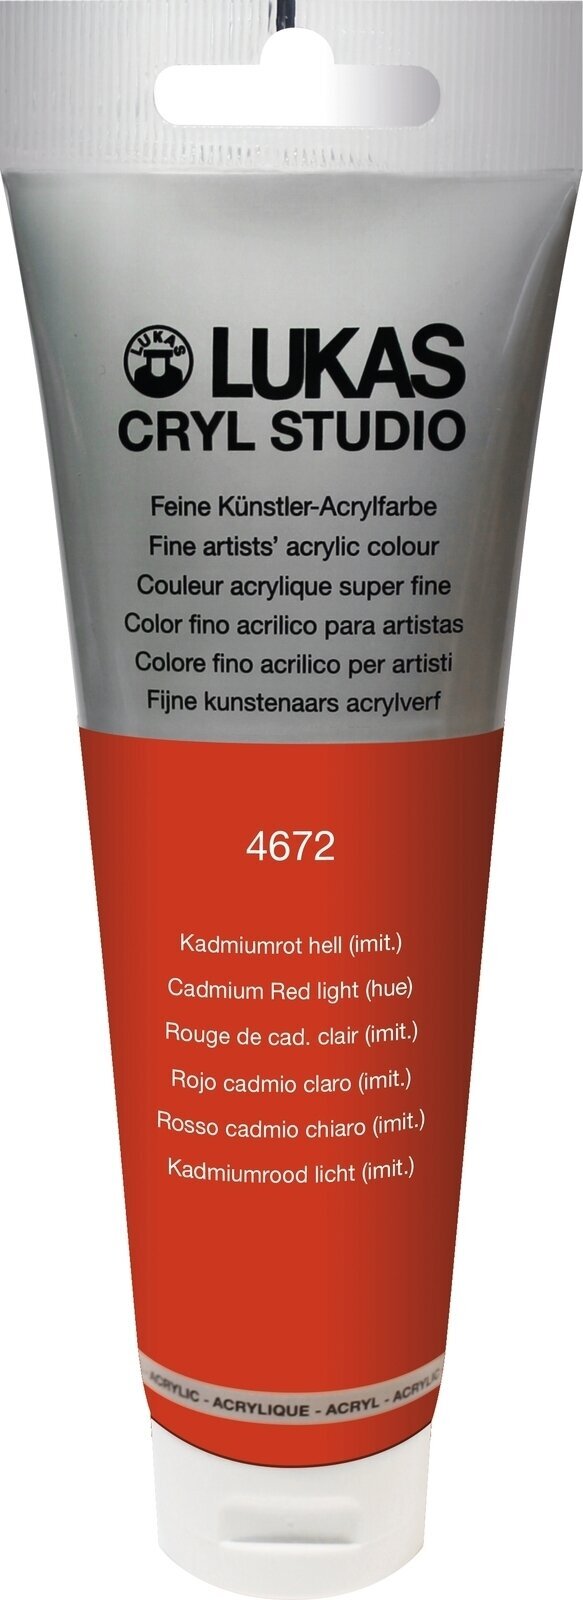 Tinta acrílica Lukas Cryl Studio Acrylic Paint Plastic Tube Tinta acrílica Cadmium Red Light Hue 125 ml 1 un.